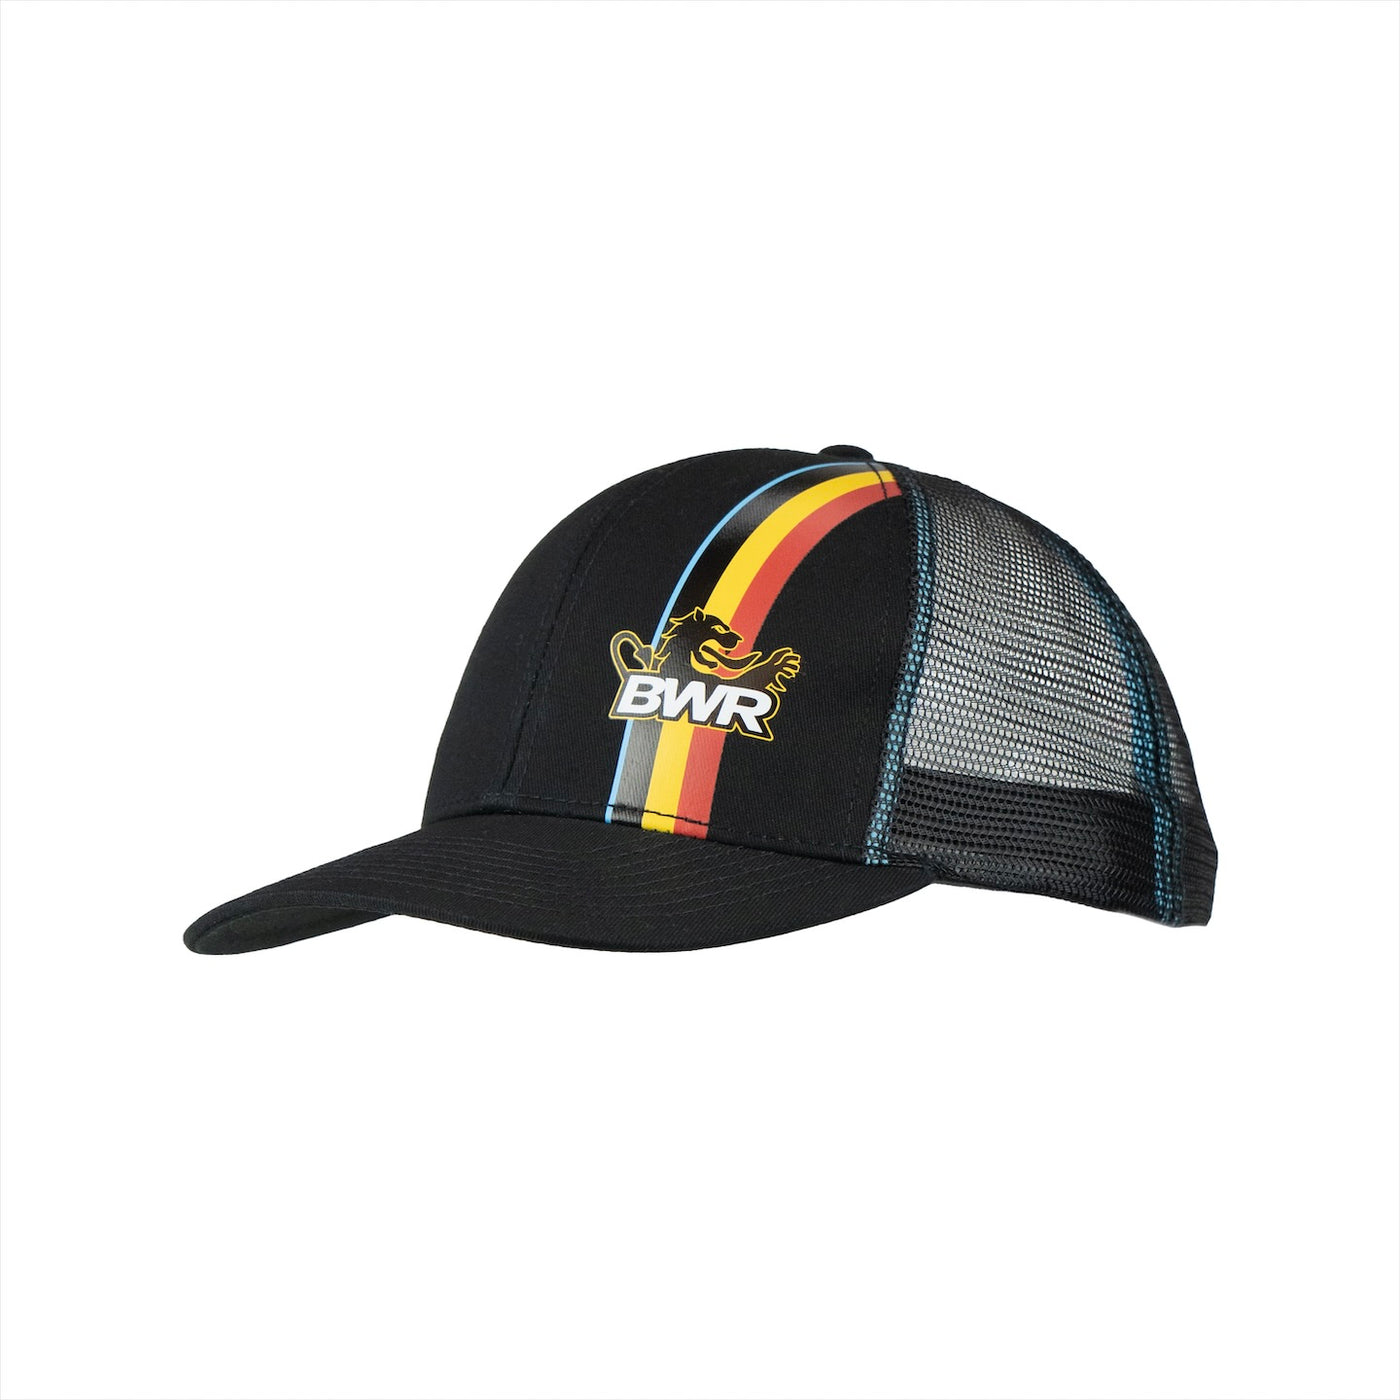 BWR Trucker Hat